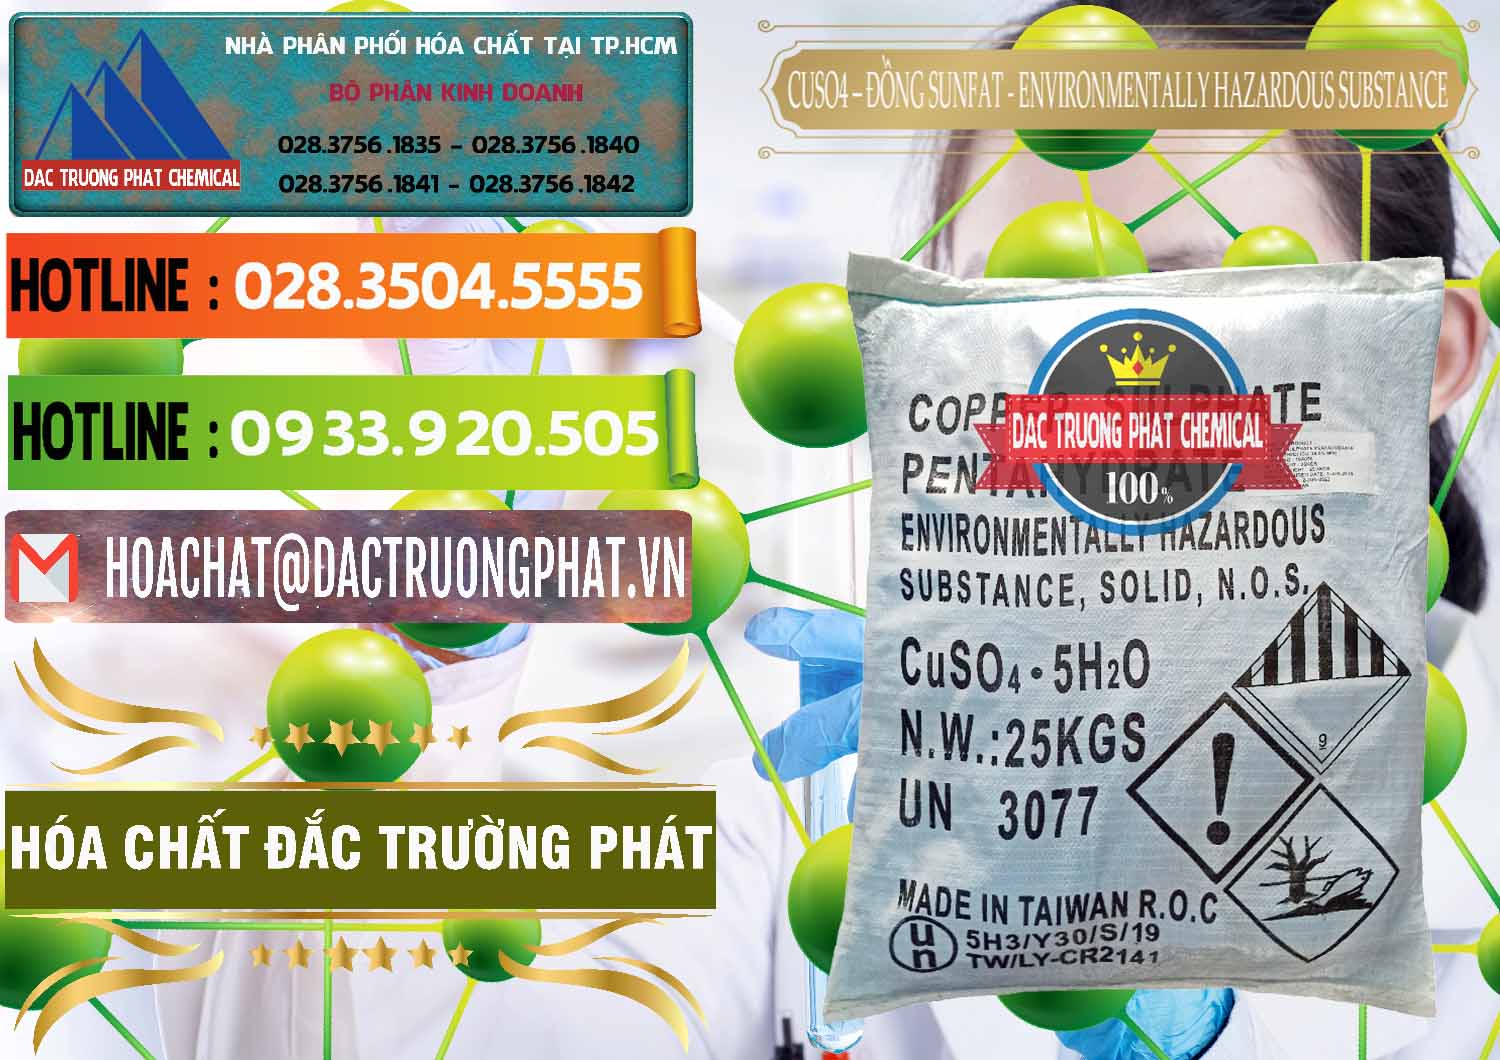 Nơi chuyên kinh doanh ( bán ) CuSO4 – Đồng Sunfat Đài Loan Taiwan - 0059 - Cty chuyên bán & phân phối hóa chất tại TP.HCM - cungcaphoachat.com.vn